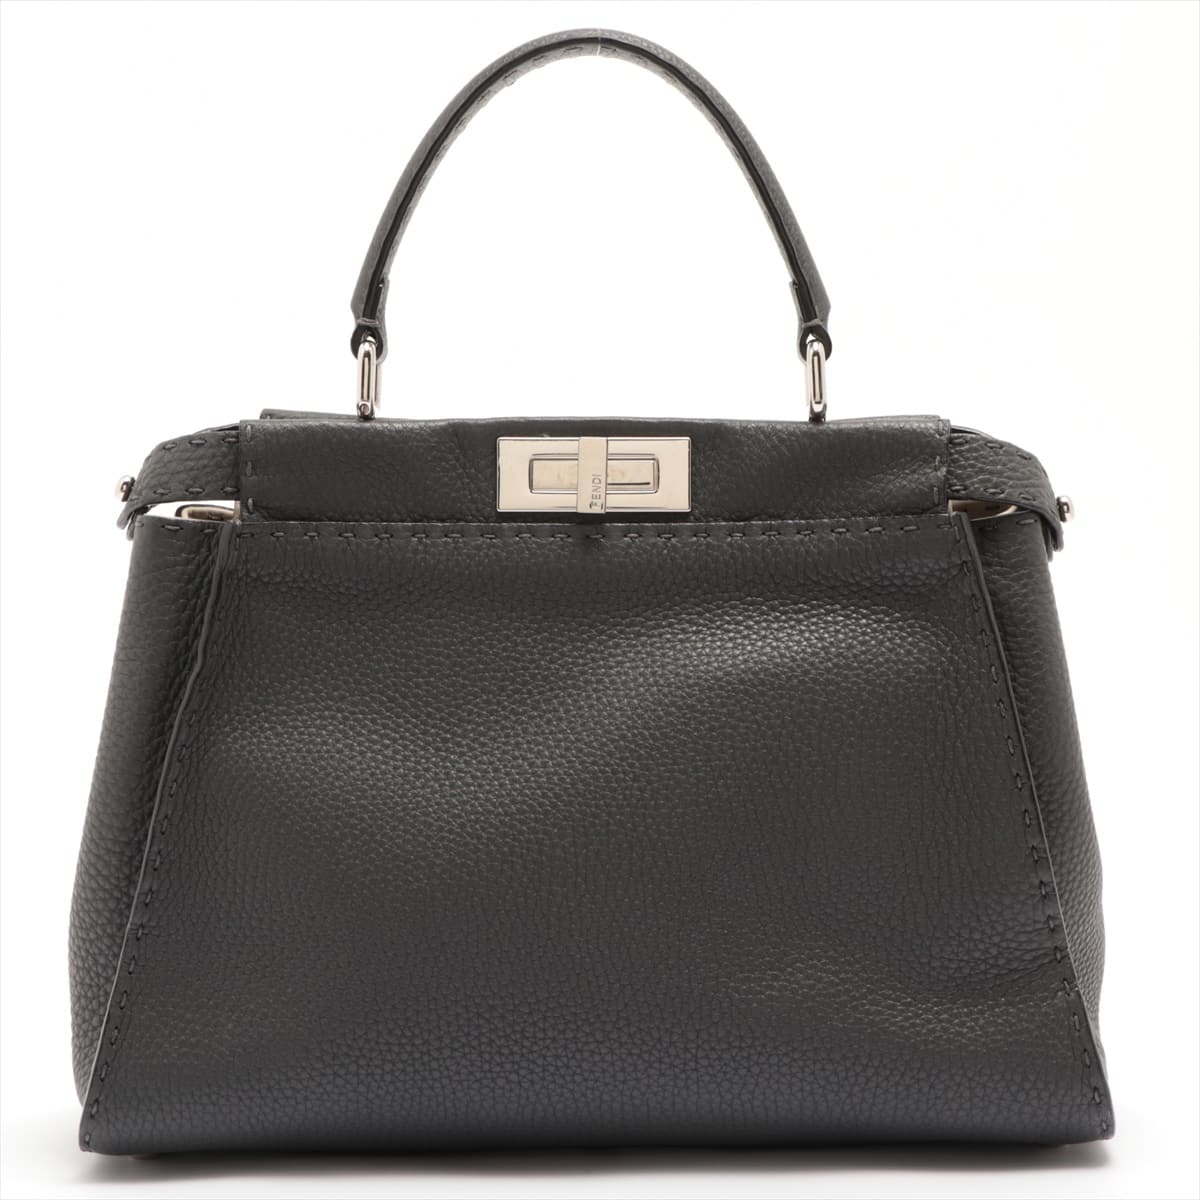 Fendi PEEKABOO REGULAR Selleria Leather 2way handbag Grey 8BN290